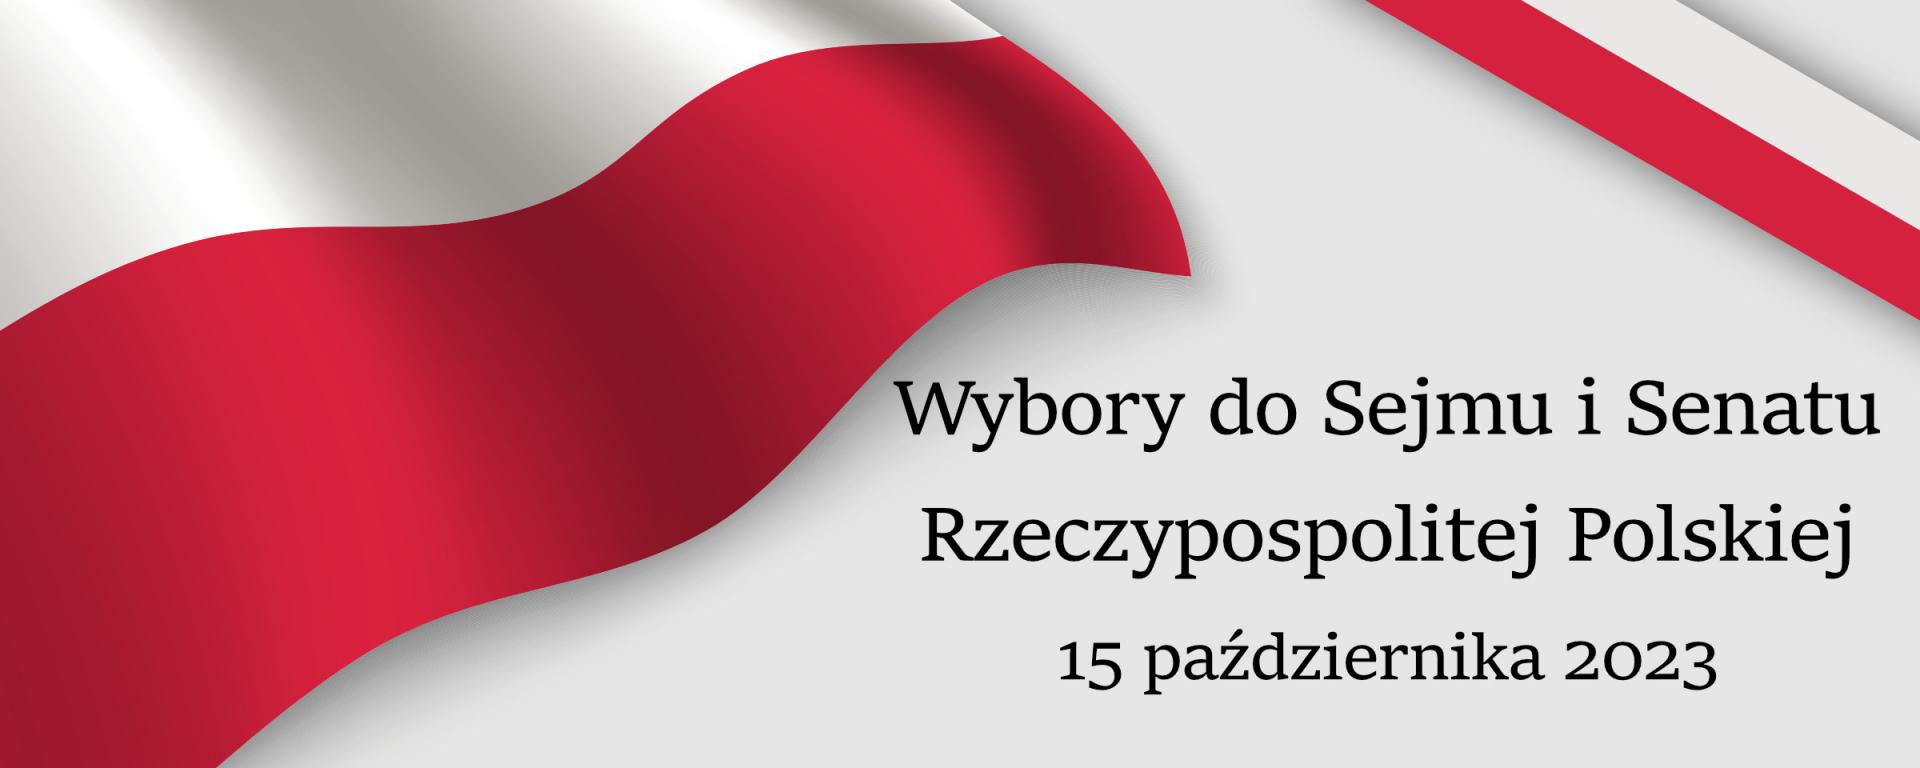 Siedziby obwodowych komisji wyborczych w wyborach do Sejmu i Senatu Rzeczypospolitej Polskiej zarządzonych na dzień 15 października 2023r.